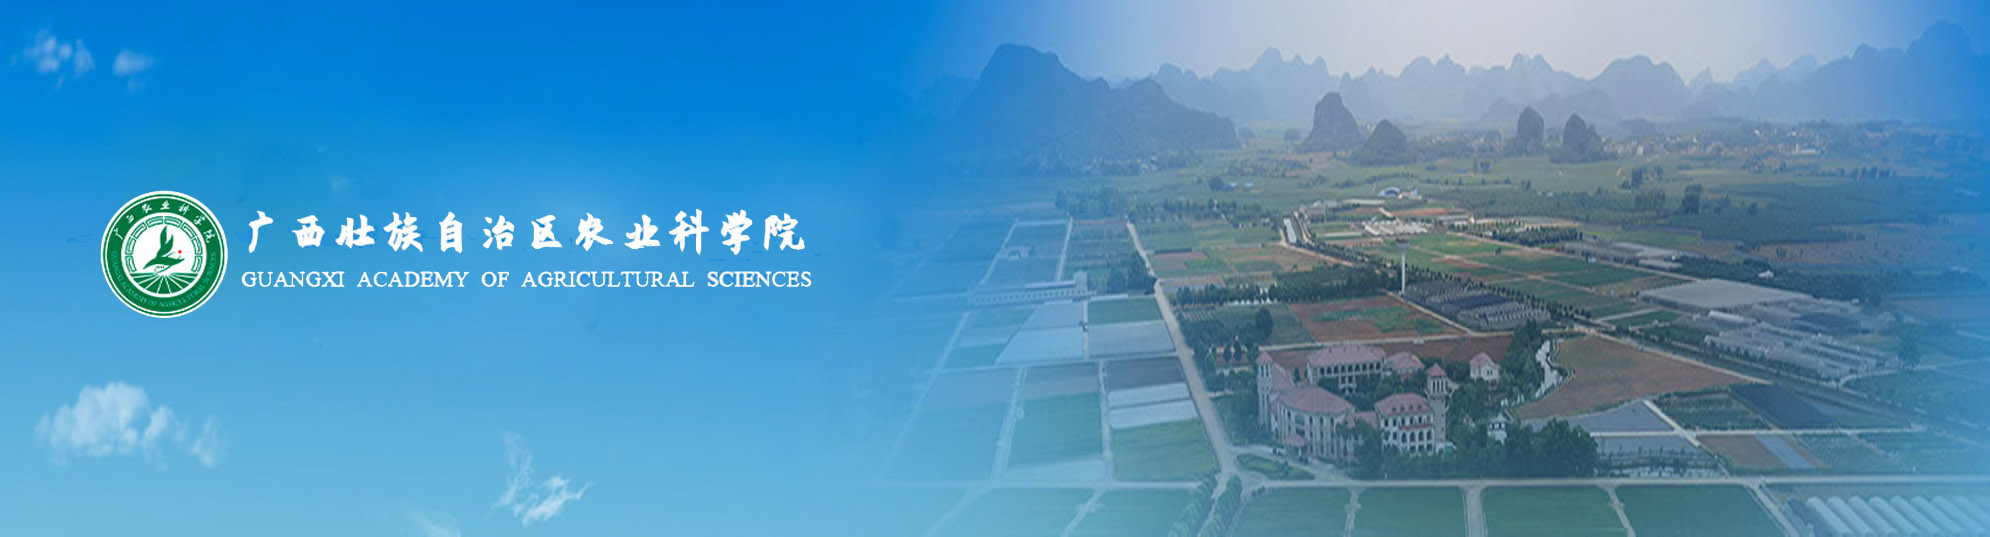 广西农业科学院及直属单位2020年度公开招聘工作人员公告